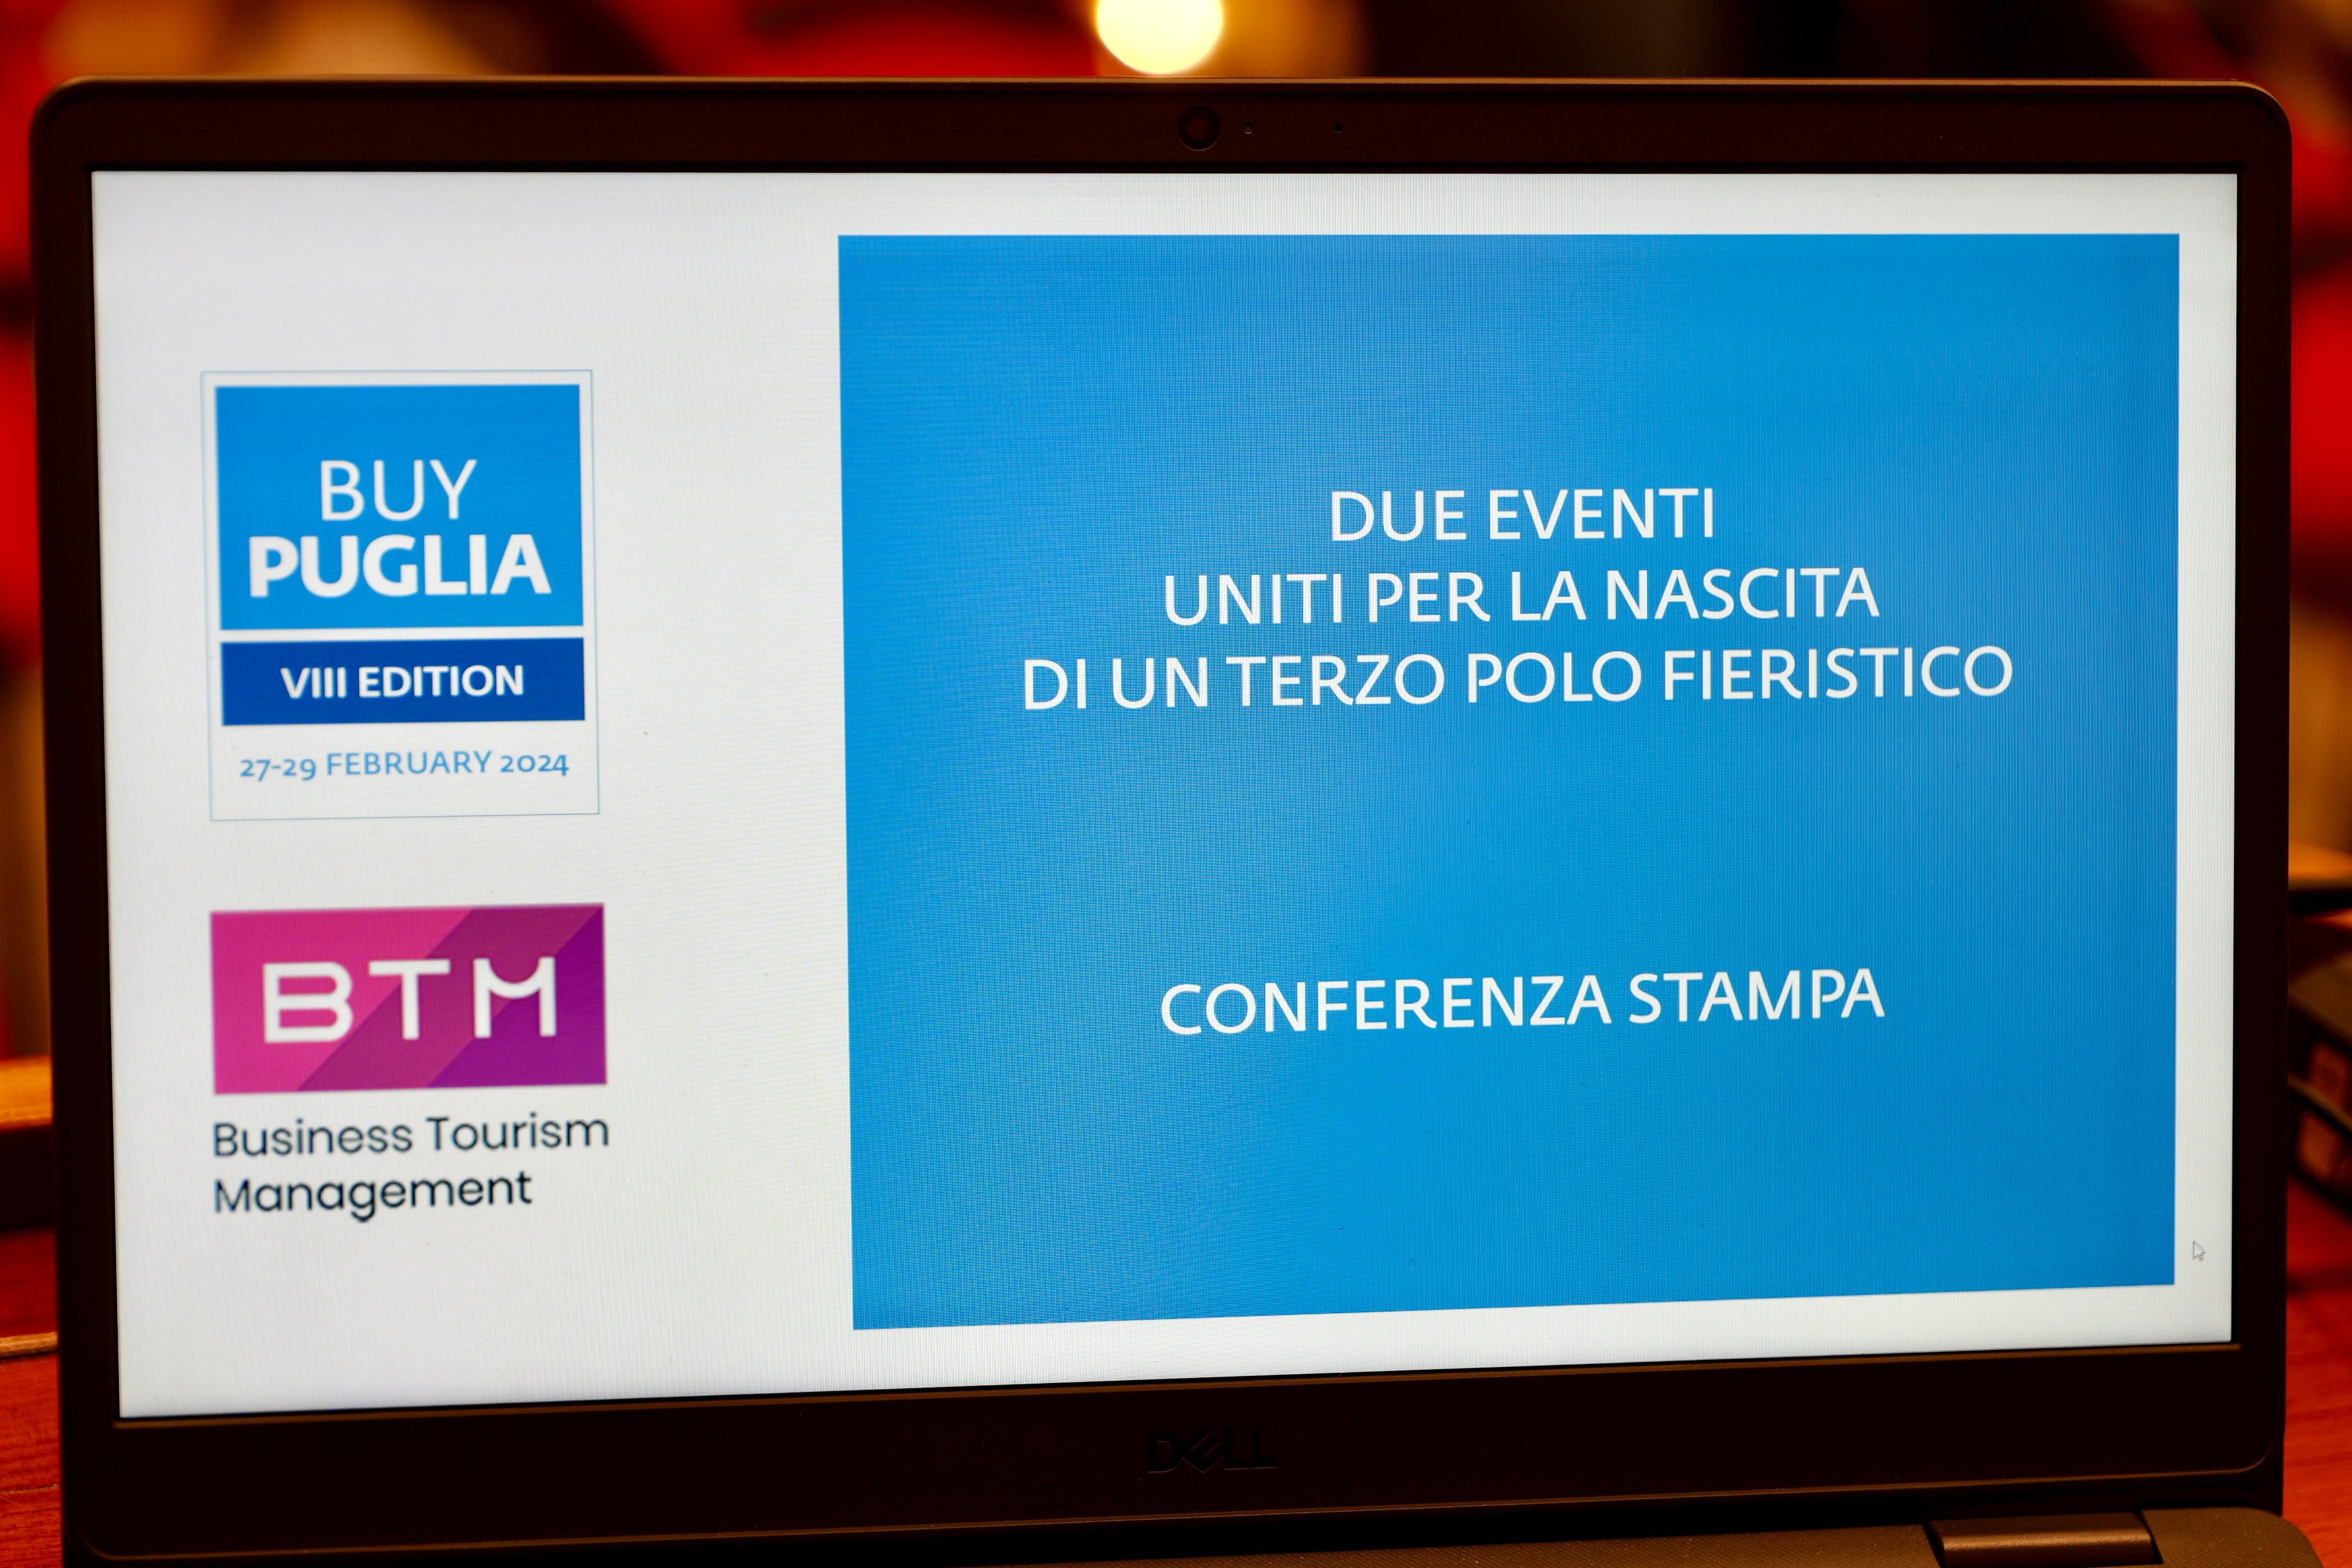 Galleria Turismo, BuyPuglia e Btm italia per buyers esteri, formazione e crescita professionale - Diapositiva 1 di 9